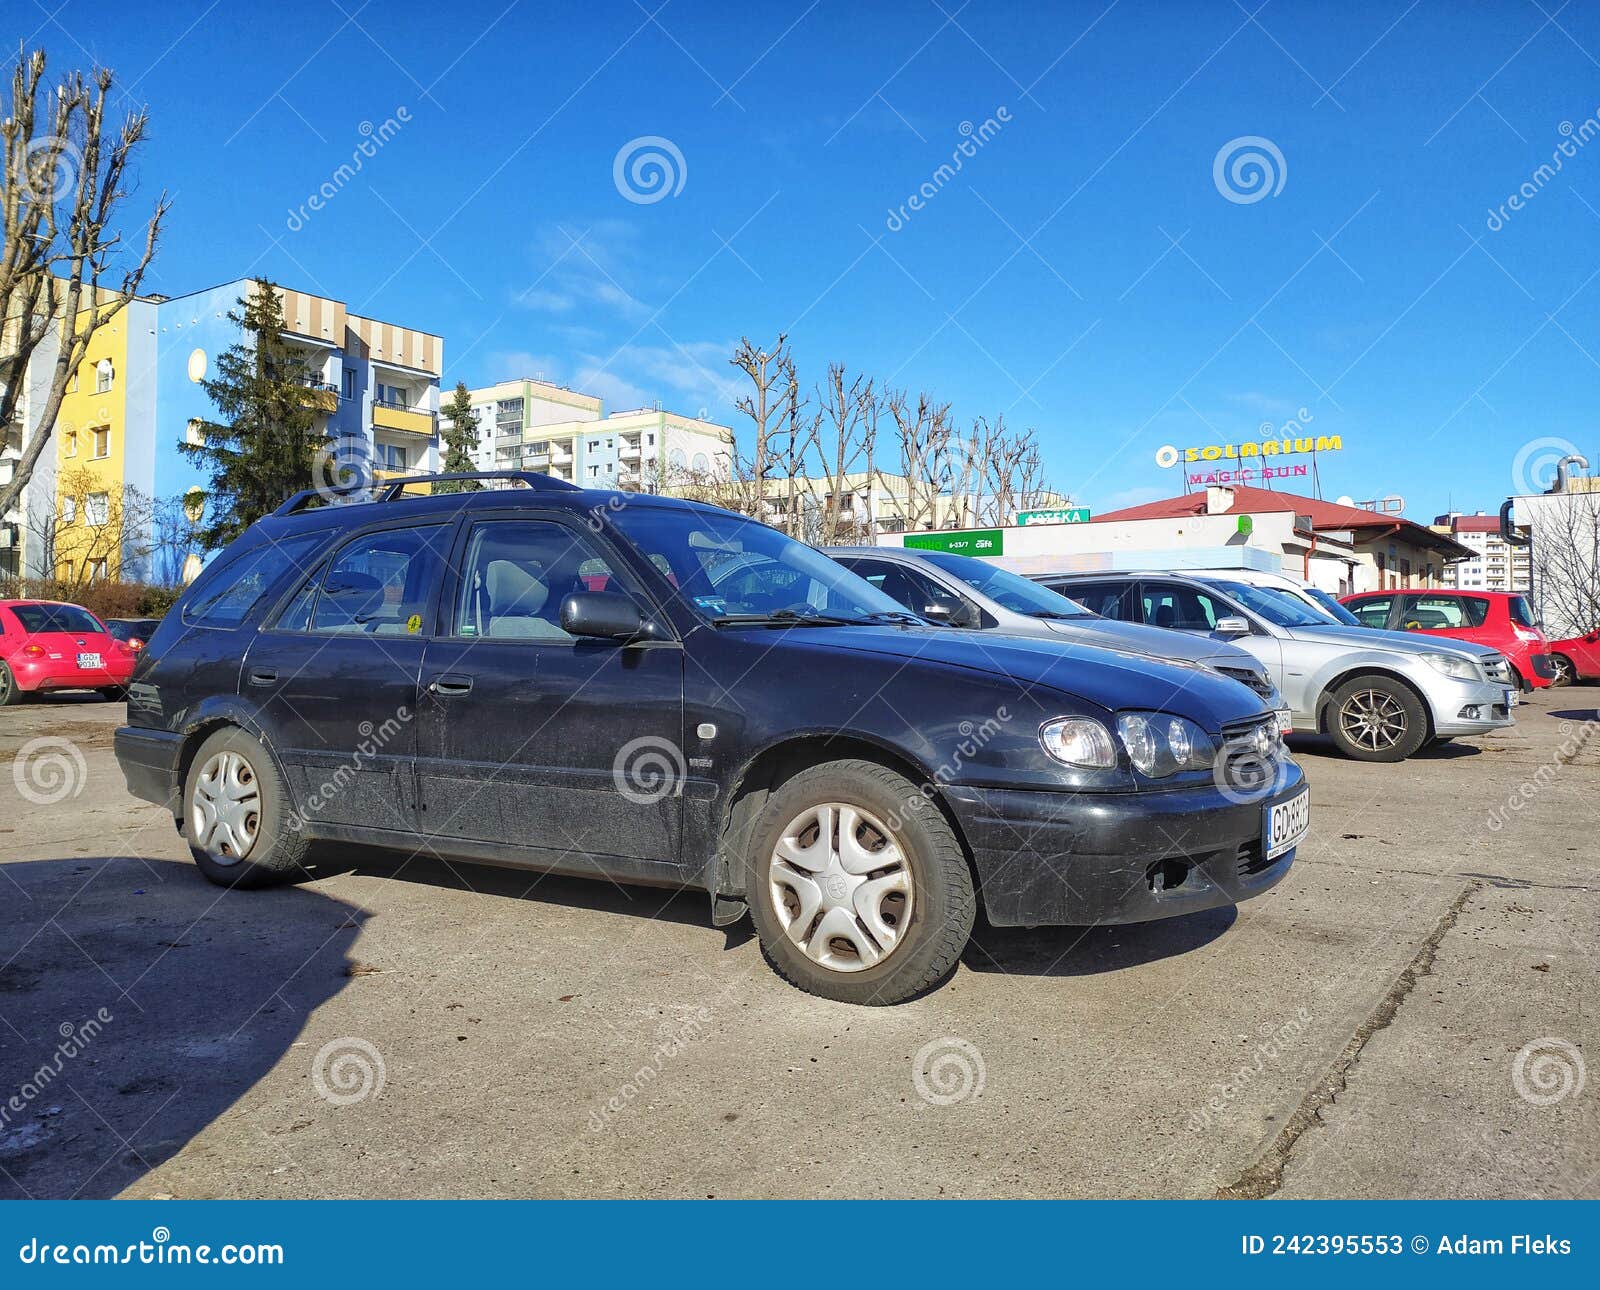 Alter Schwarzer Heckenwagen Toyota Corolla Geparkt. Redaktionelles